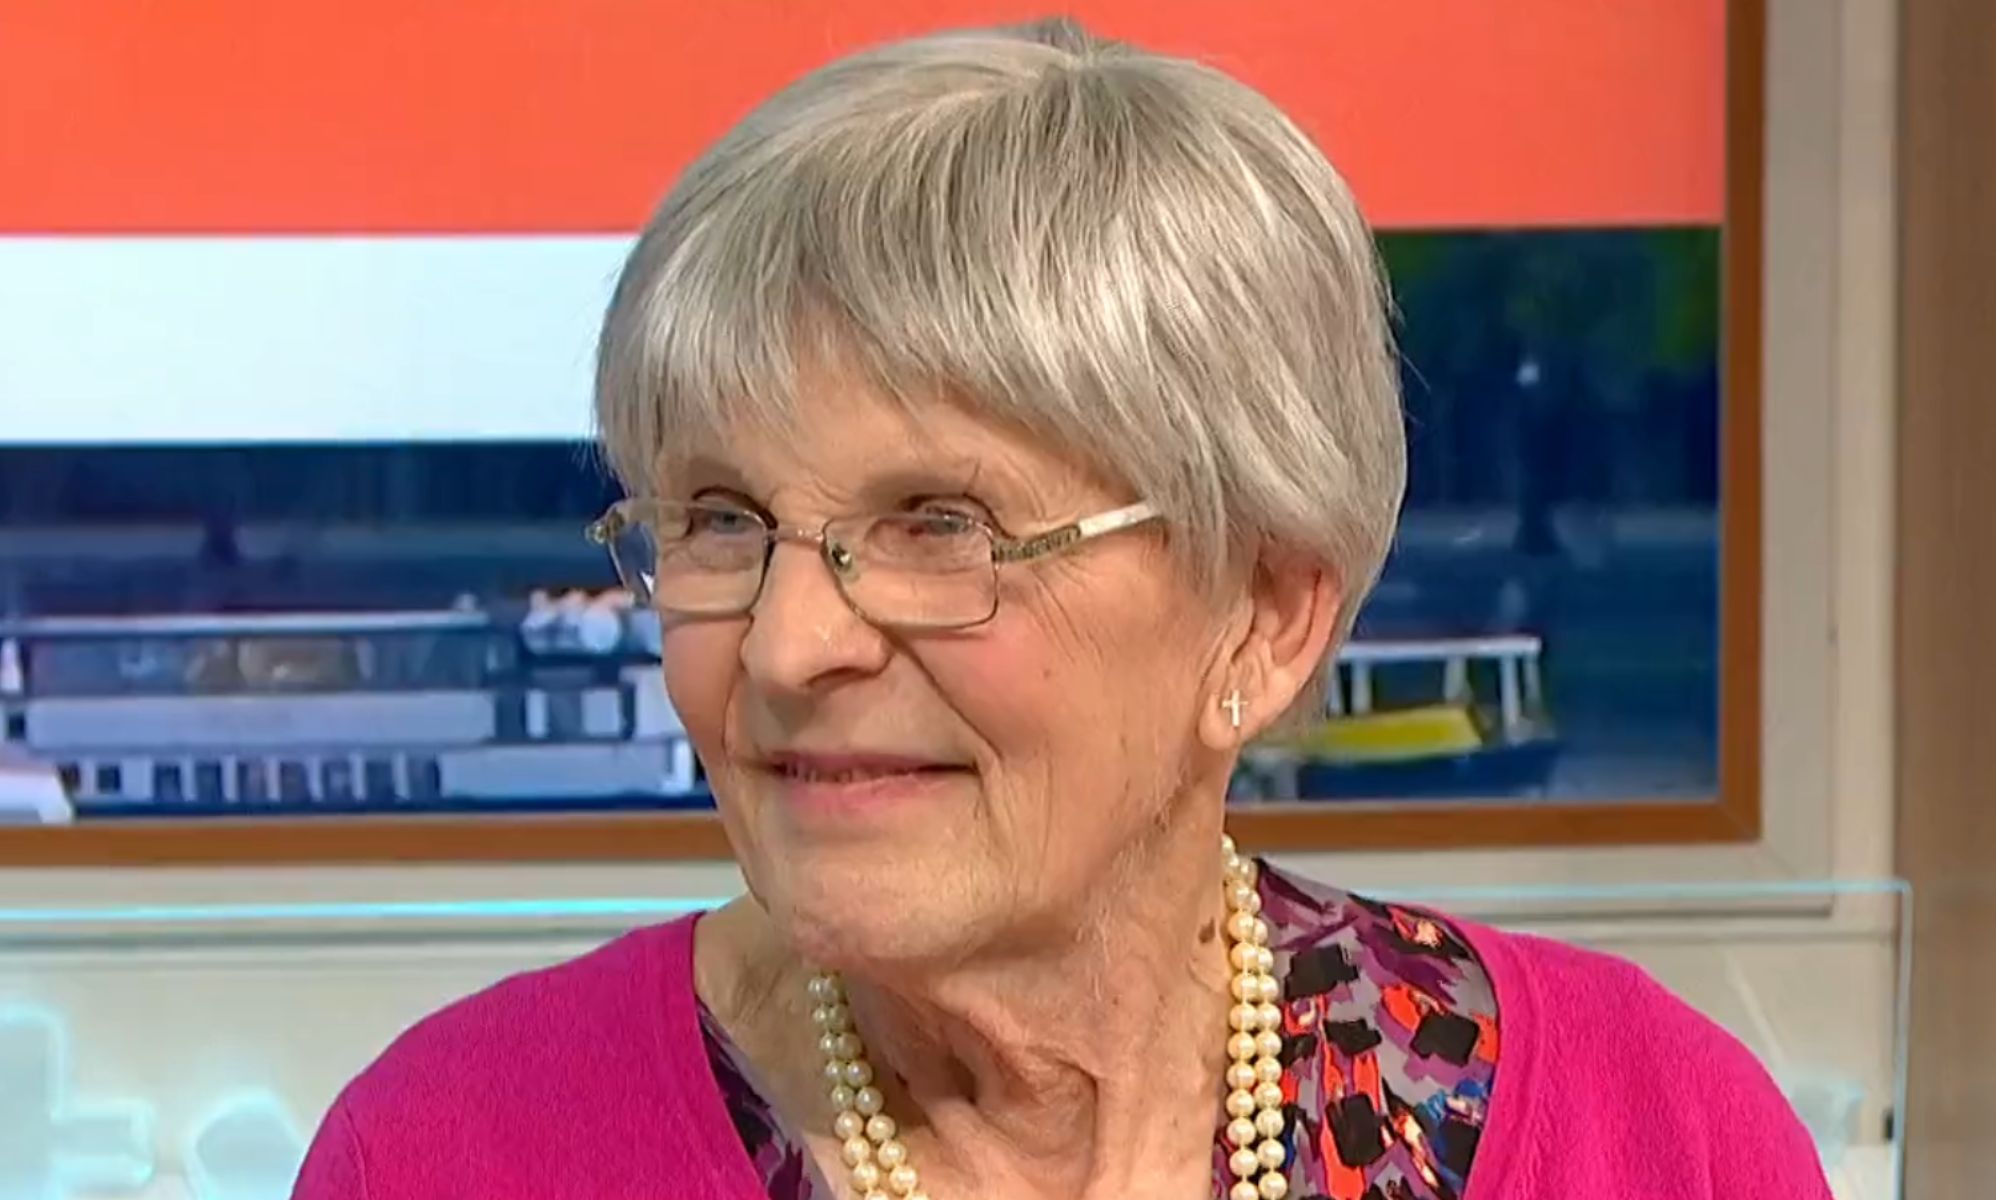 Esta mujer trans de 80 años demuestra que nunca es tarde para ser uno mismo